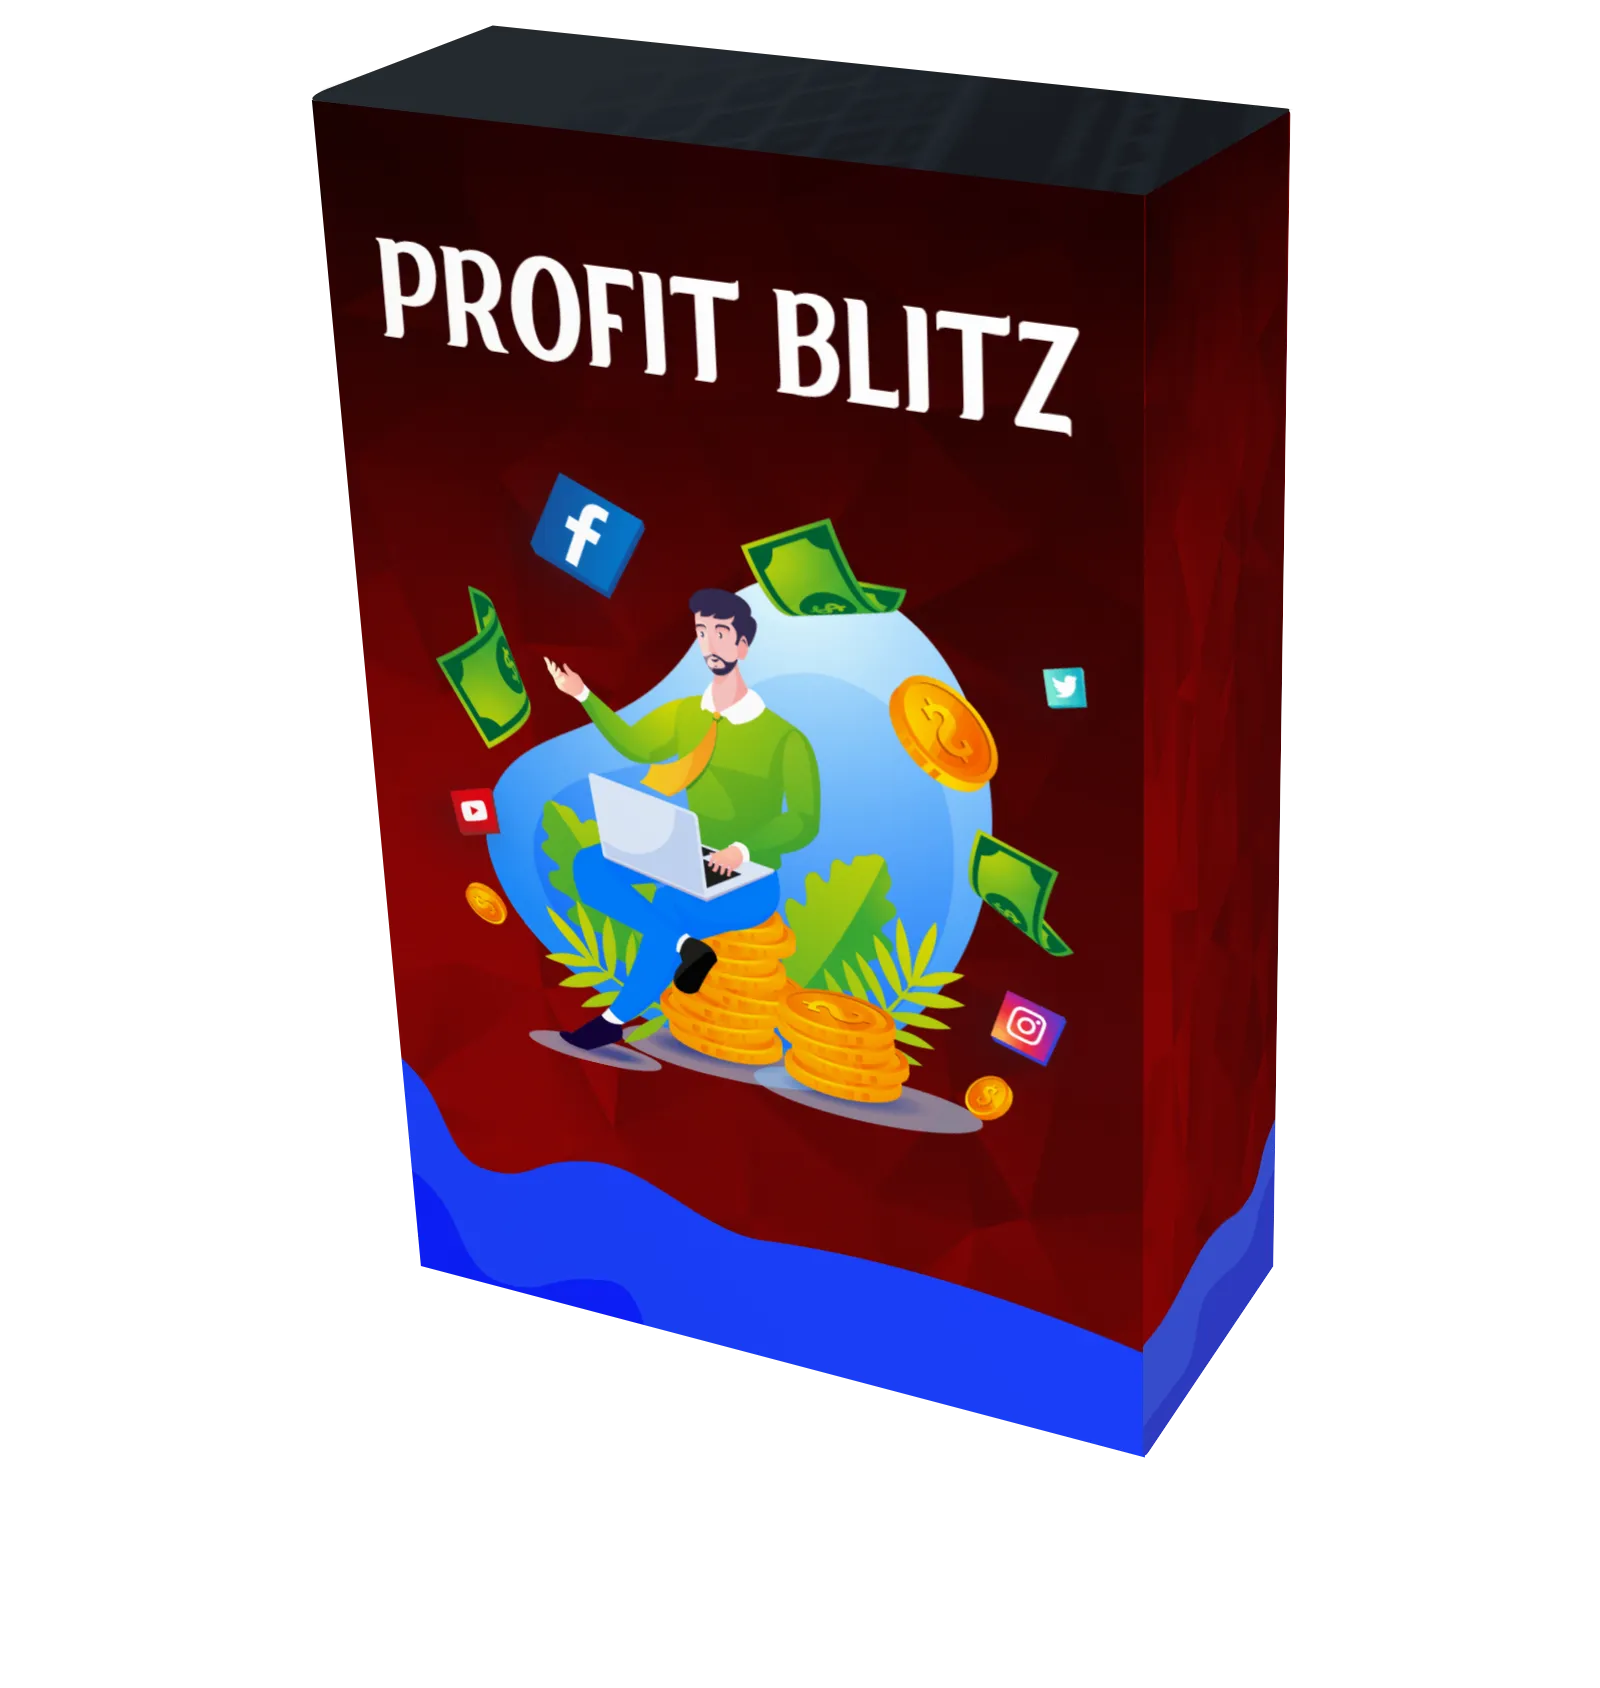 profitblitz ad